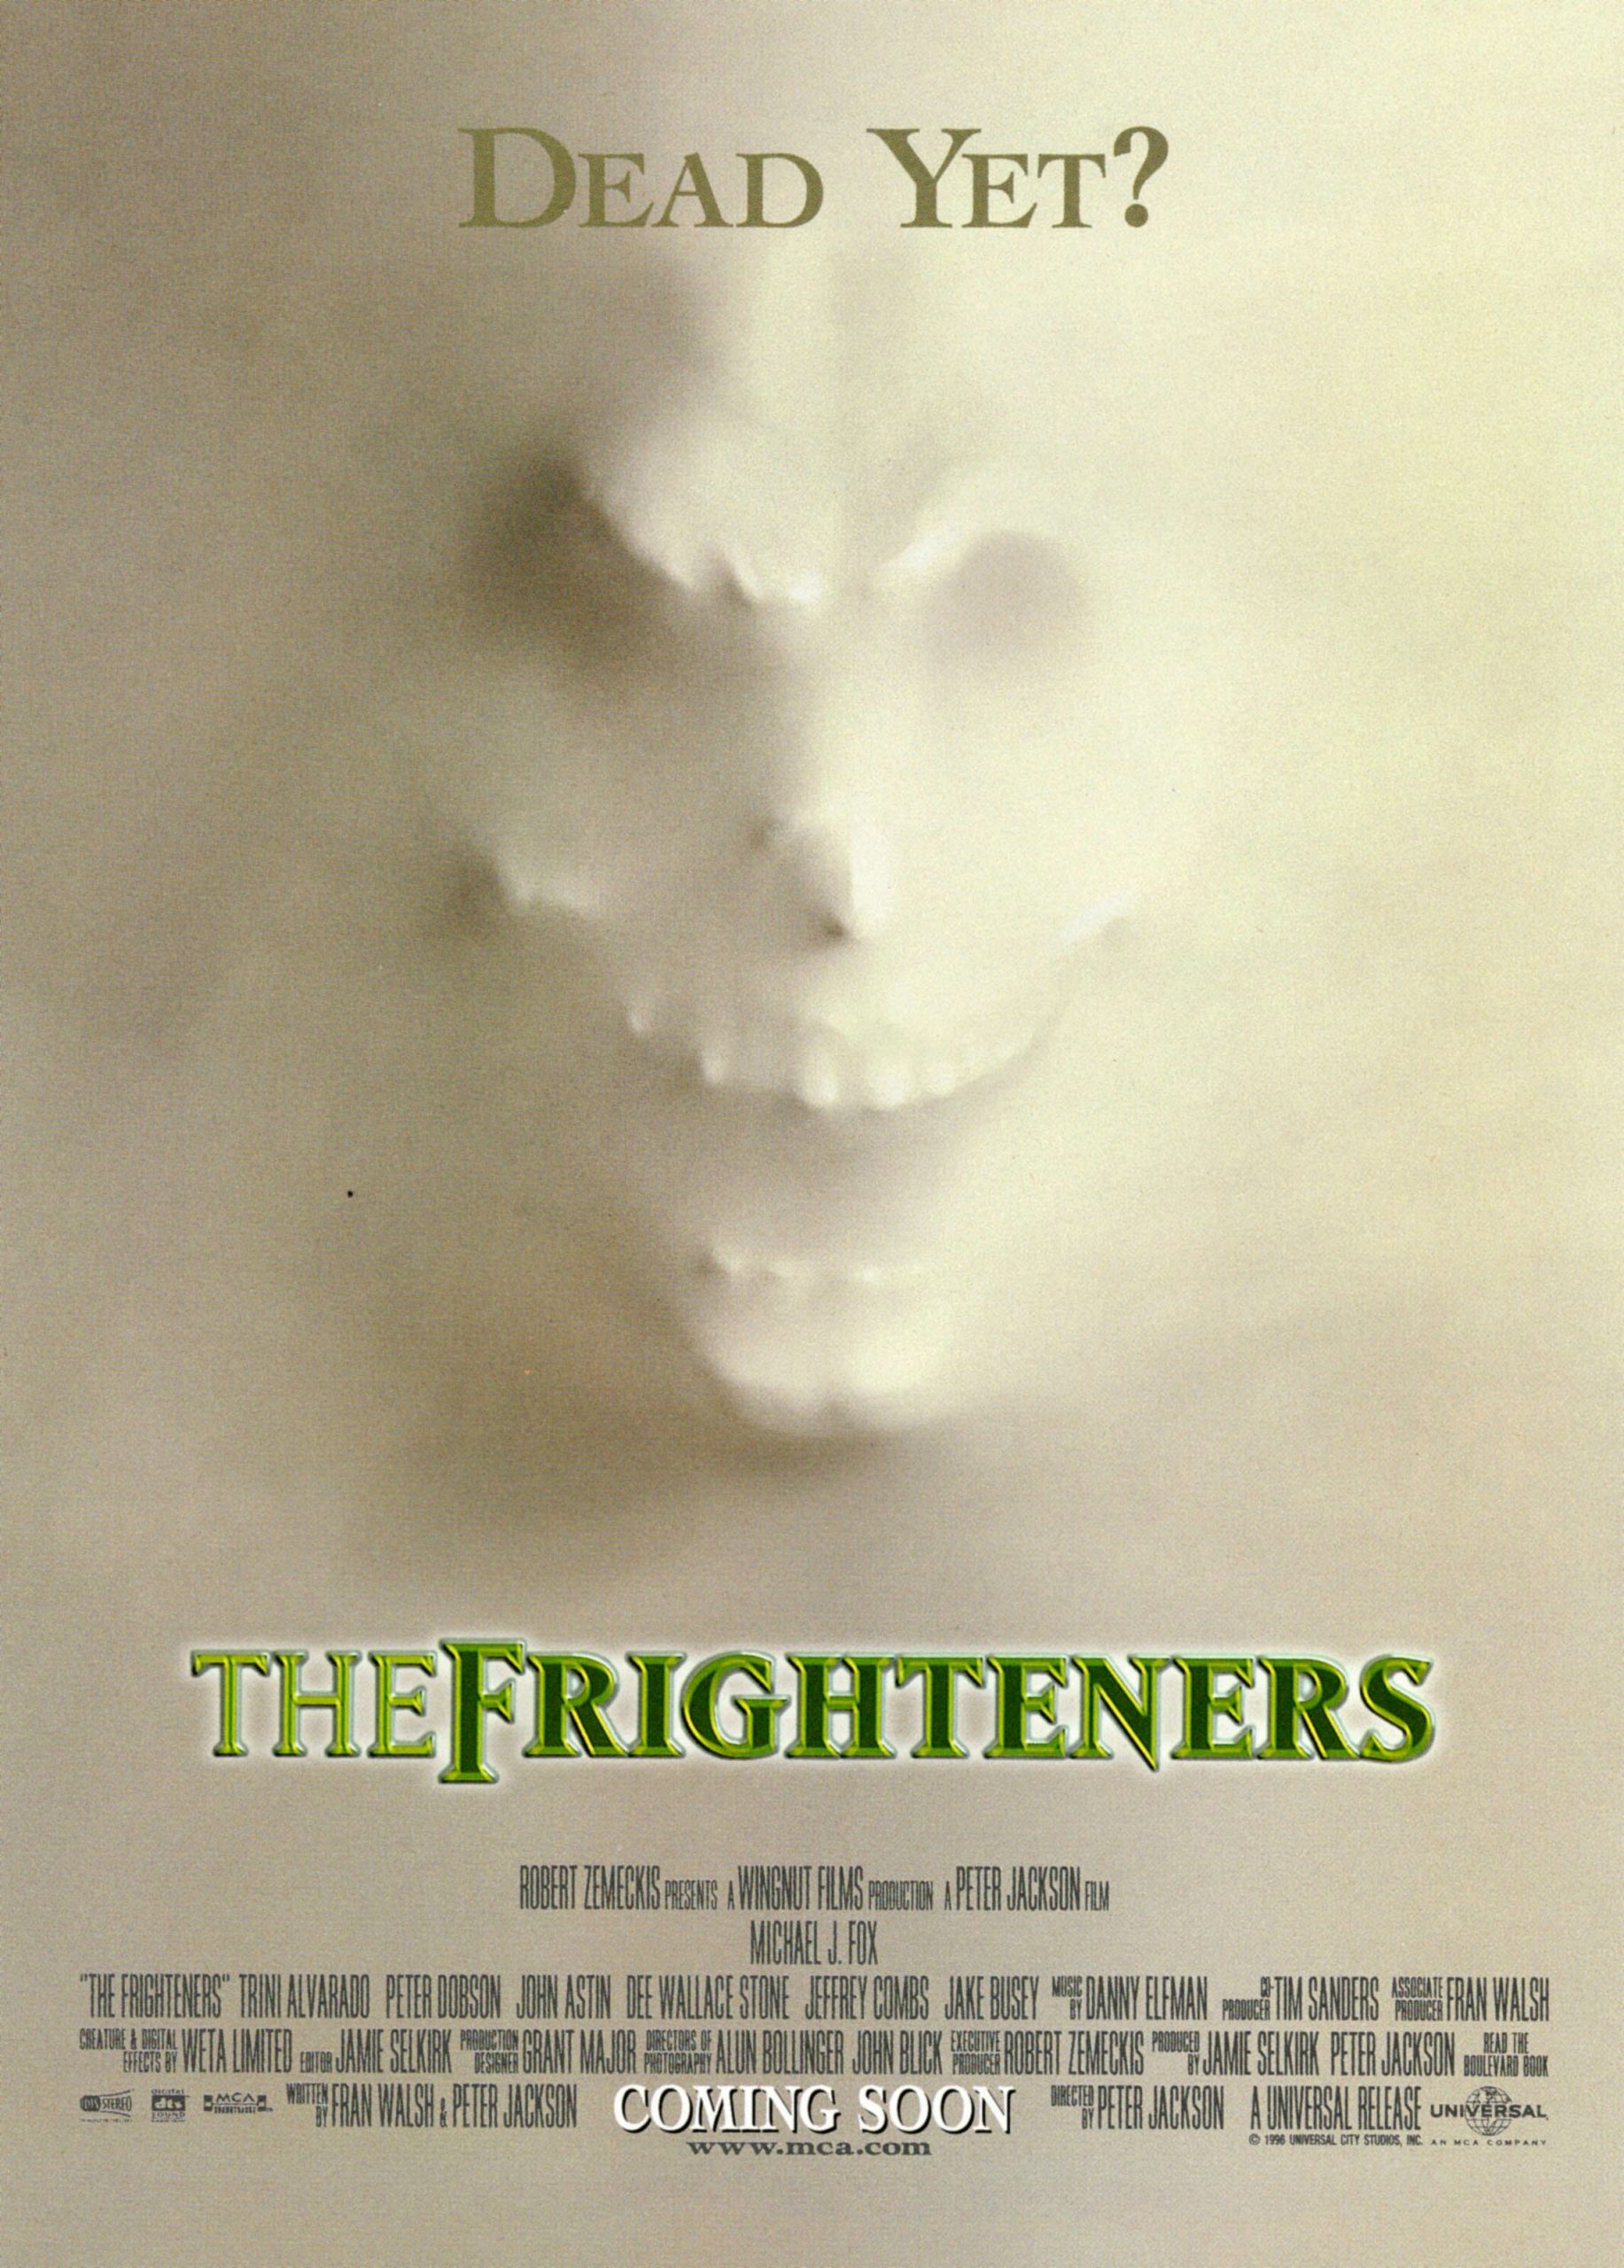 THE FRIGHTENERS (1996) สามผีสี่เผ่าเขย่าโลก ซับไทย